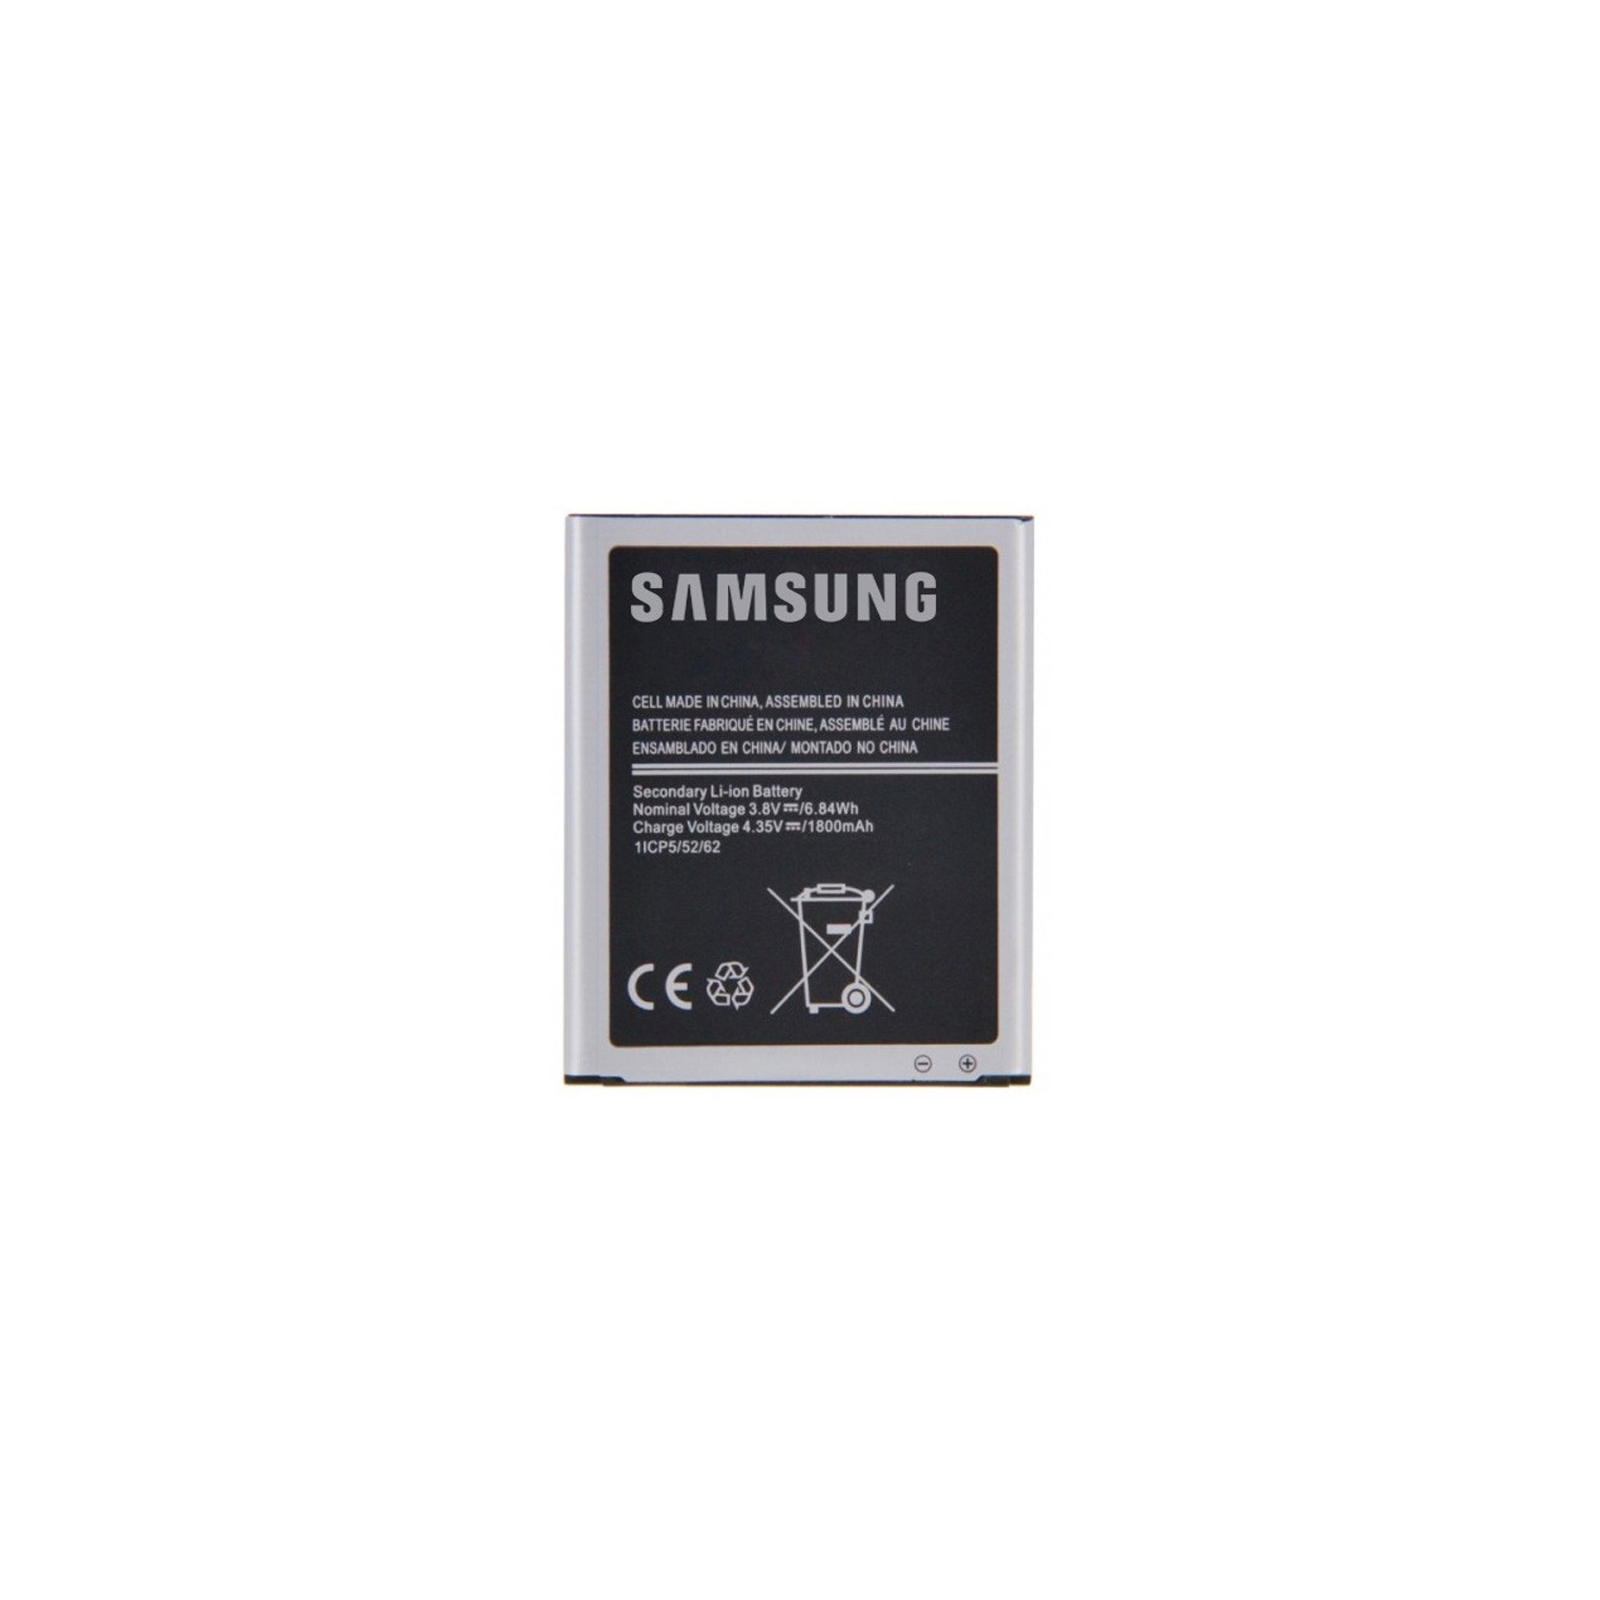 Аккумуляторная батарея Samsung for J110 (J1 Ace) (EB-BJ110ABE / 46952)